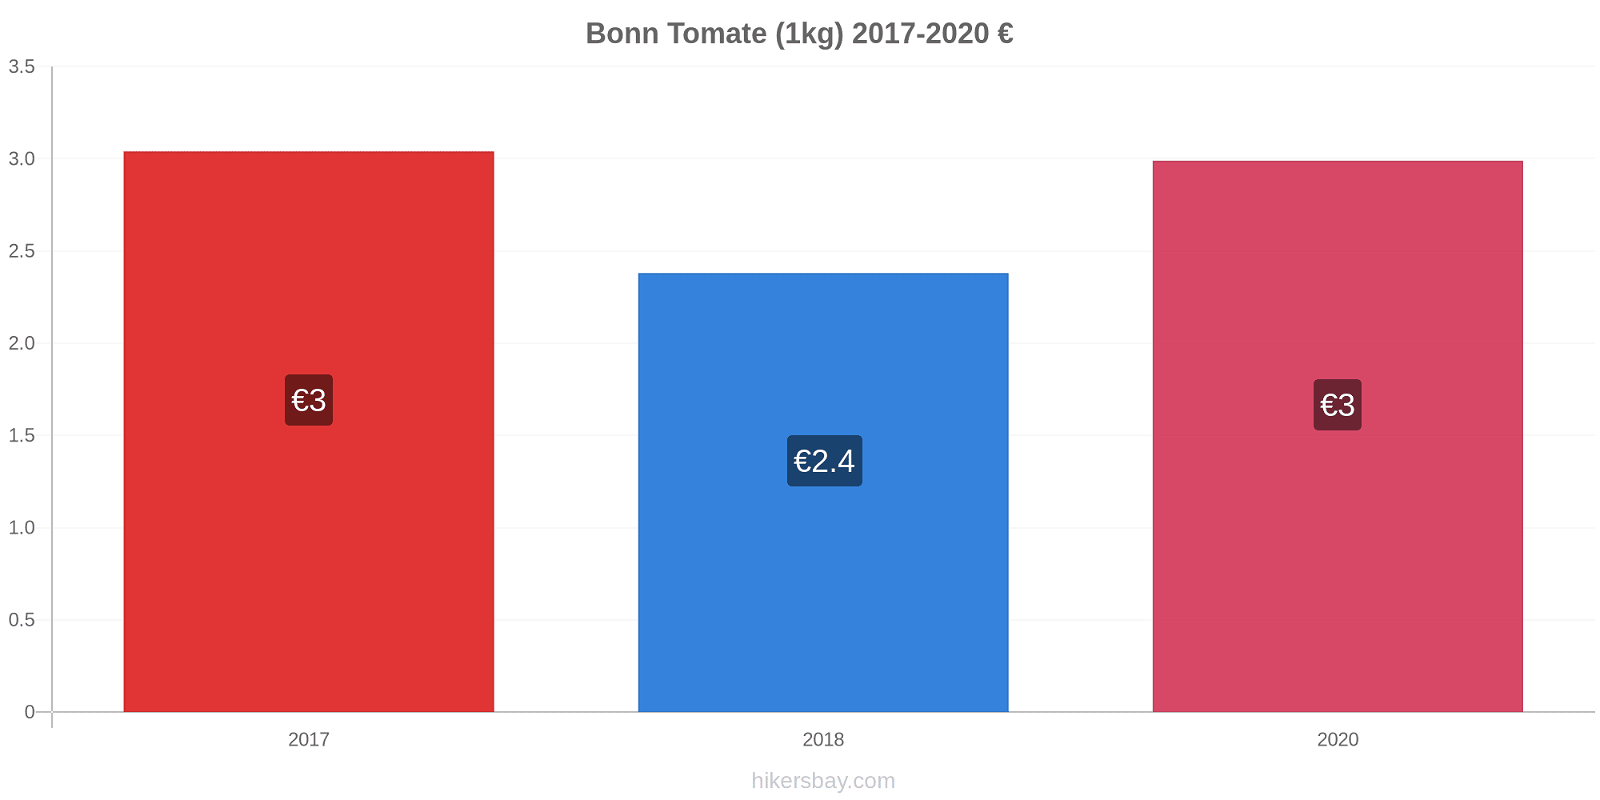 Bonn cambios de precios Tomate (1kg) hikersbay.com